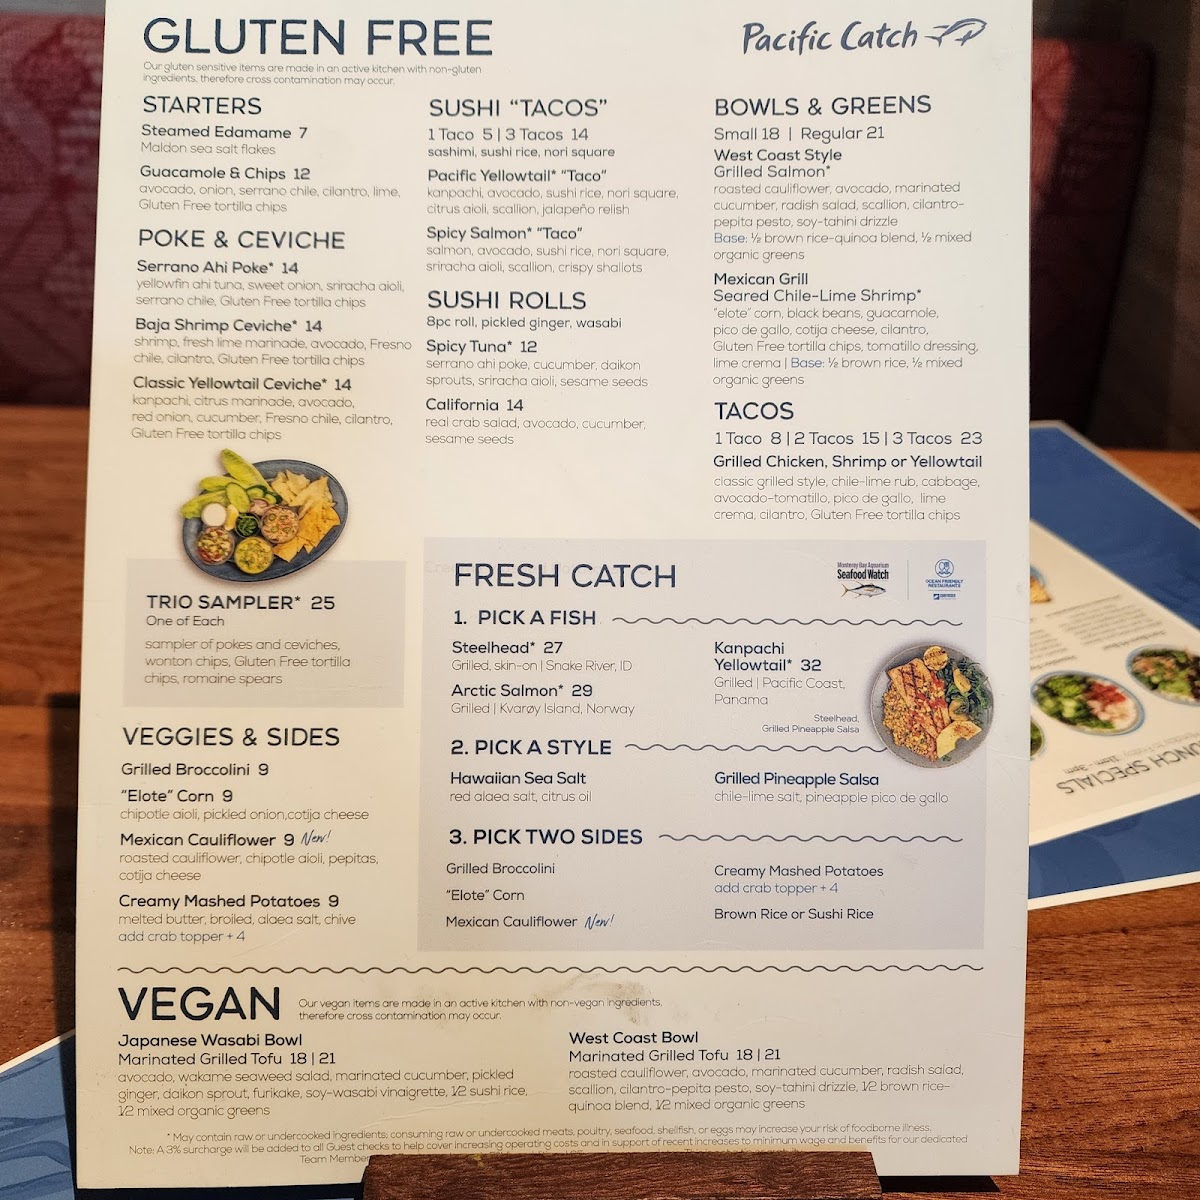 The gluten-free menu.